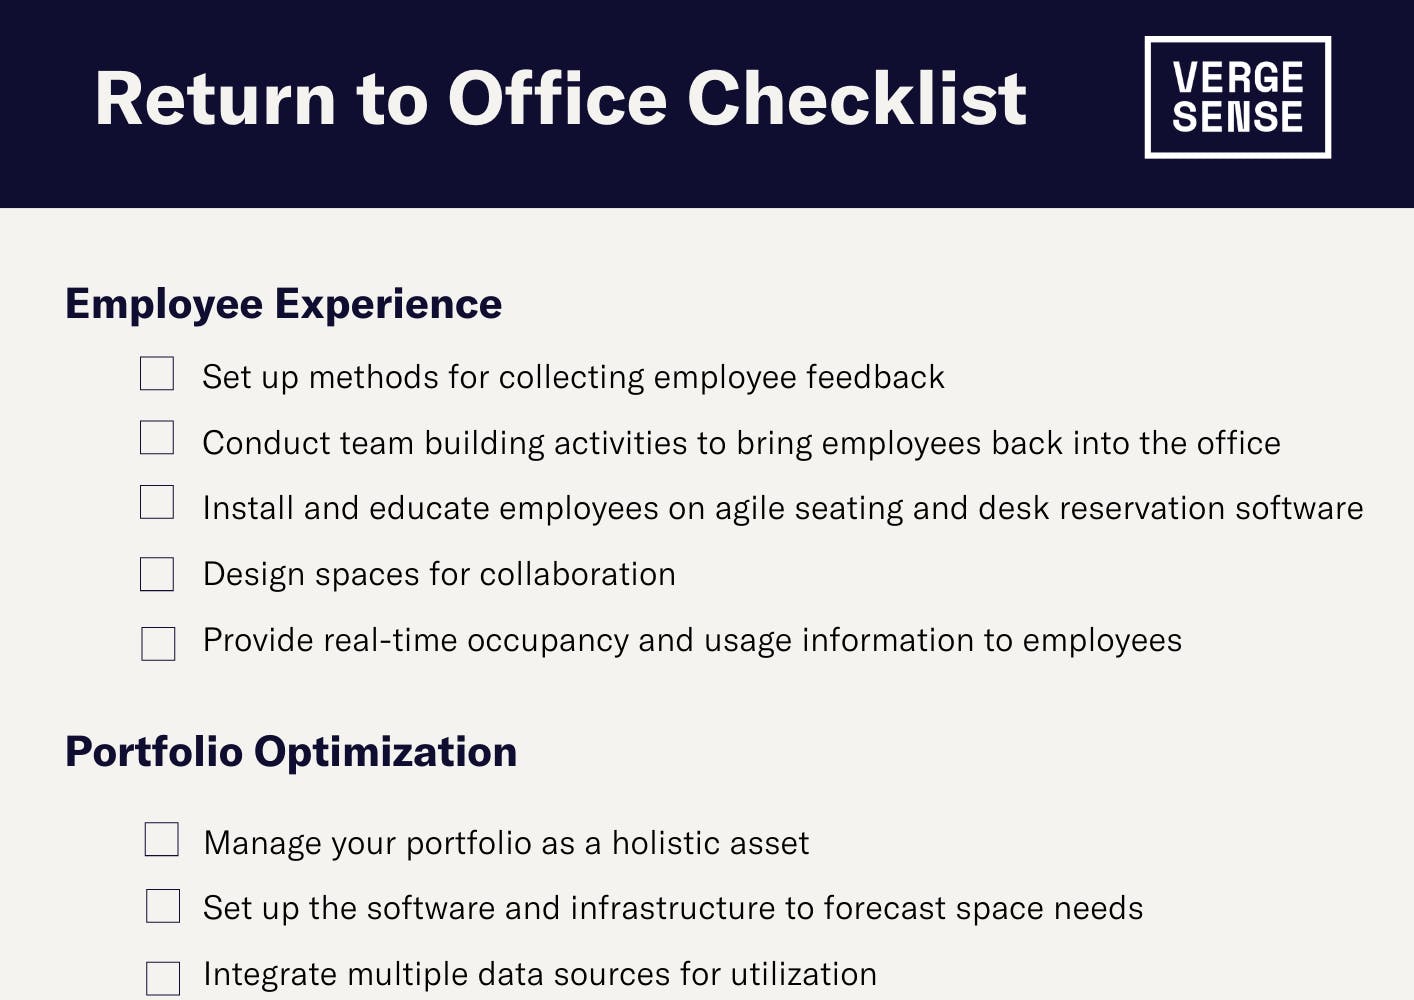 Return to Office Checklist